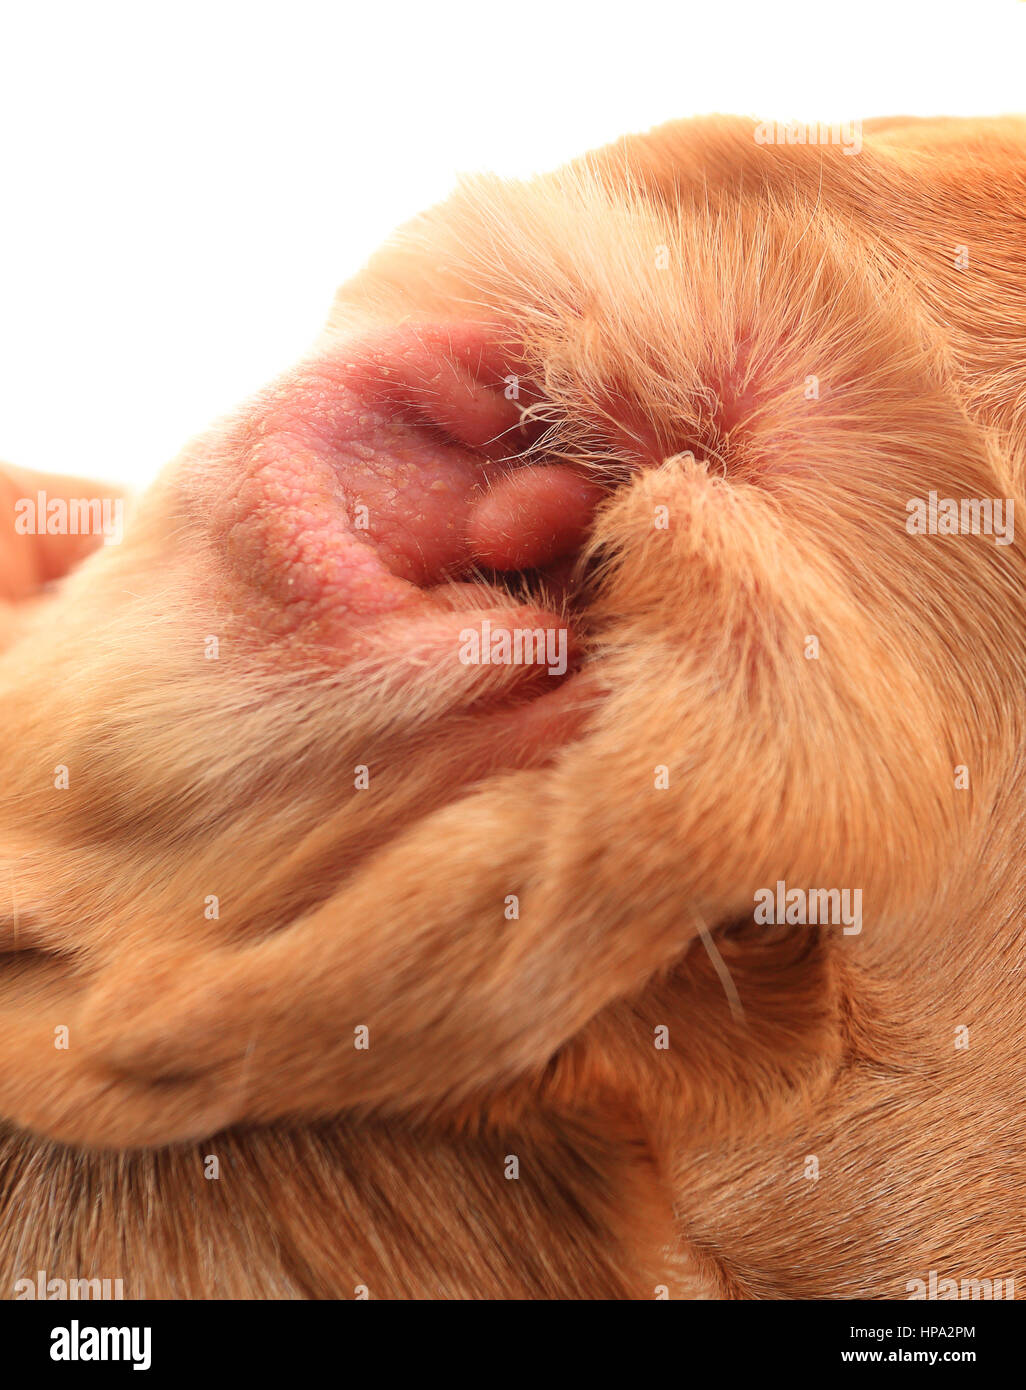 Rote Ohren des Hundes mit Allergie. Allergie auf den Beagle Ohr. Allergie  auf den Hund Ohr hautnah Stockfotografie - Alamy